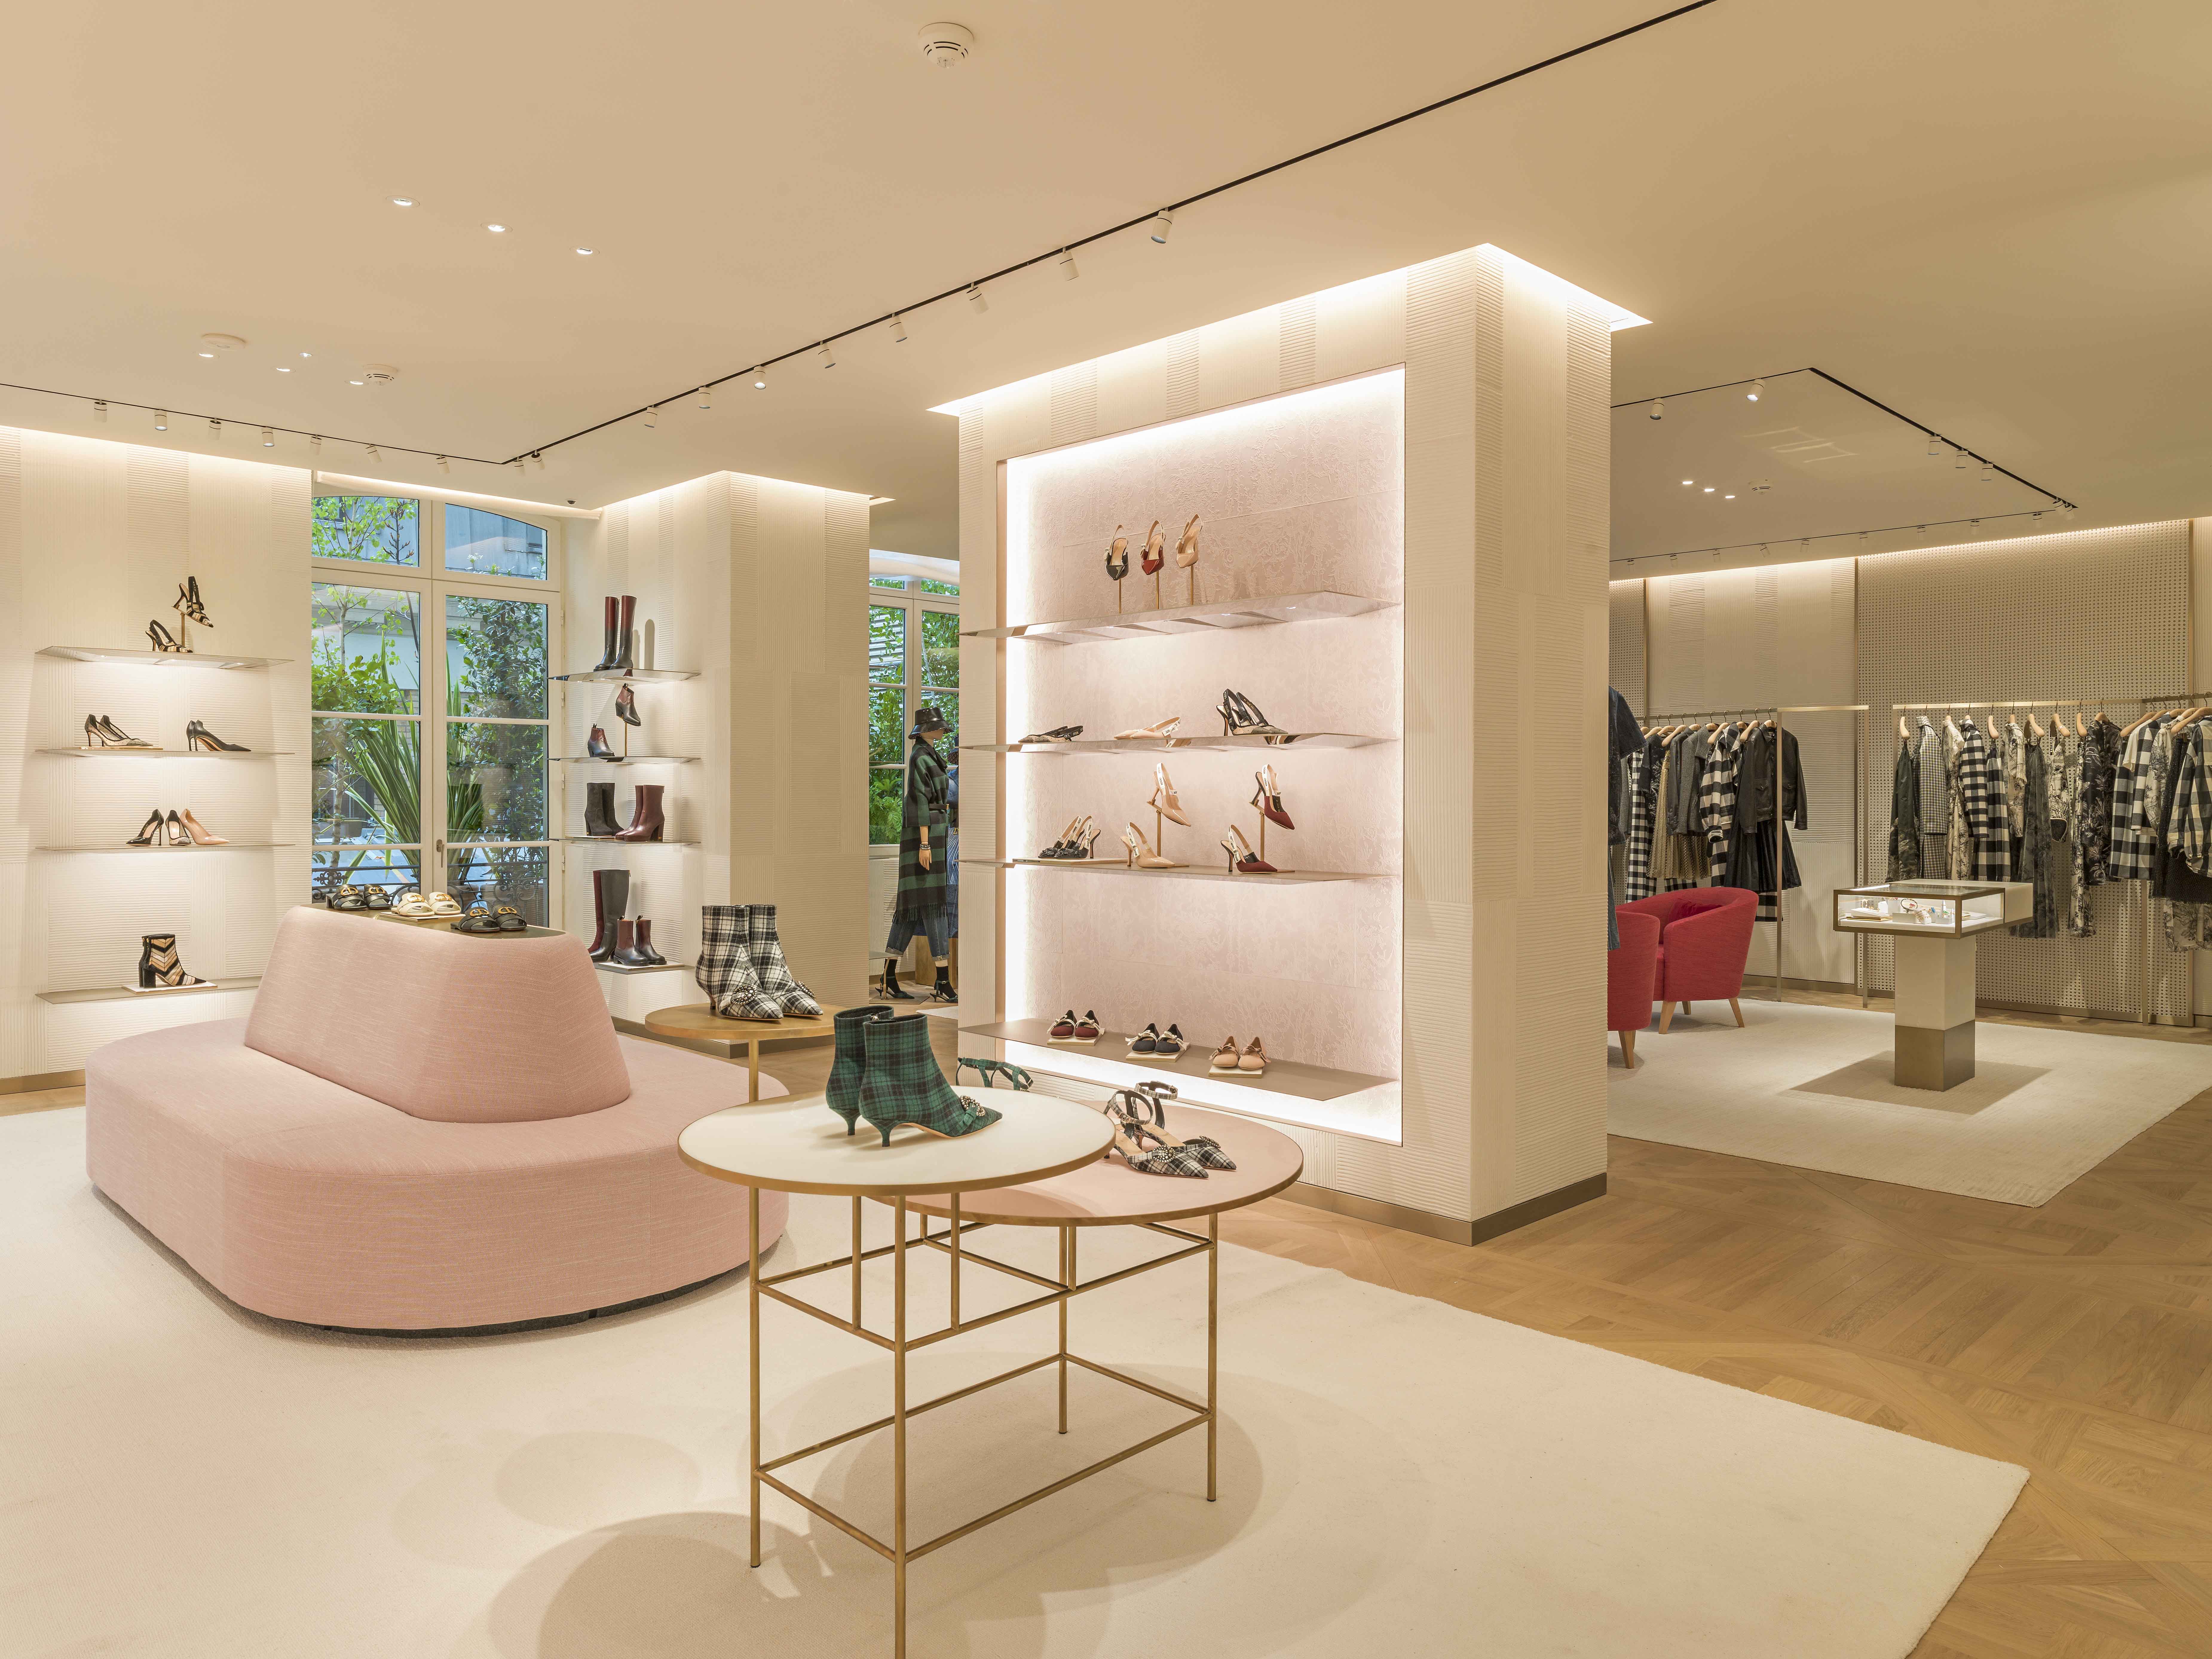 Dior opens new Parisian flagship on Champs-Élysées